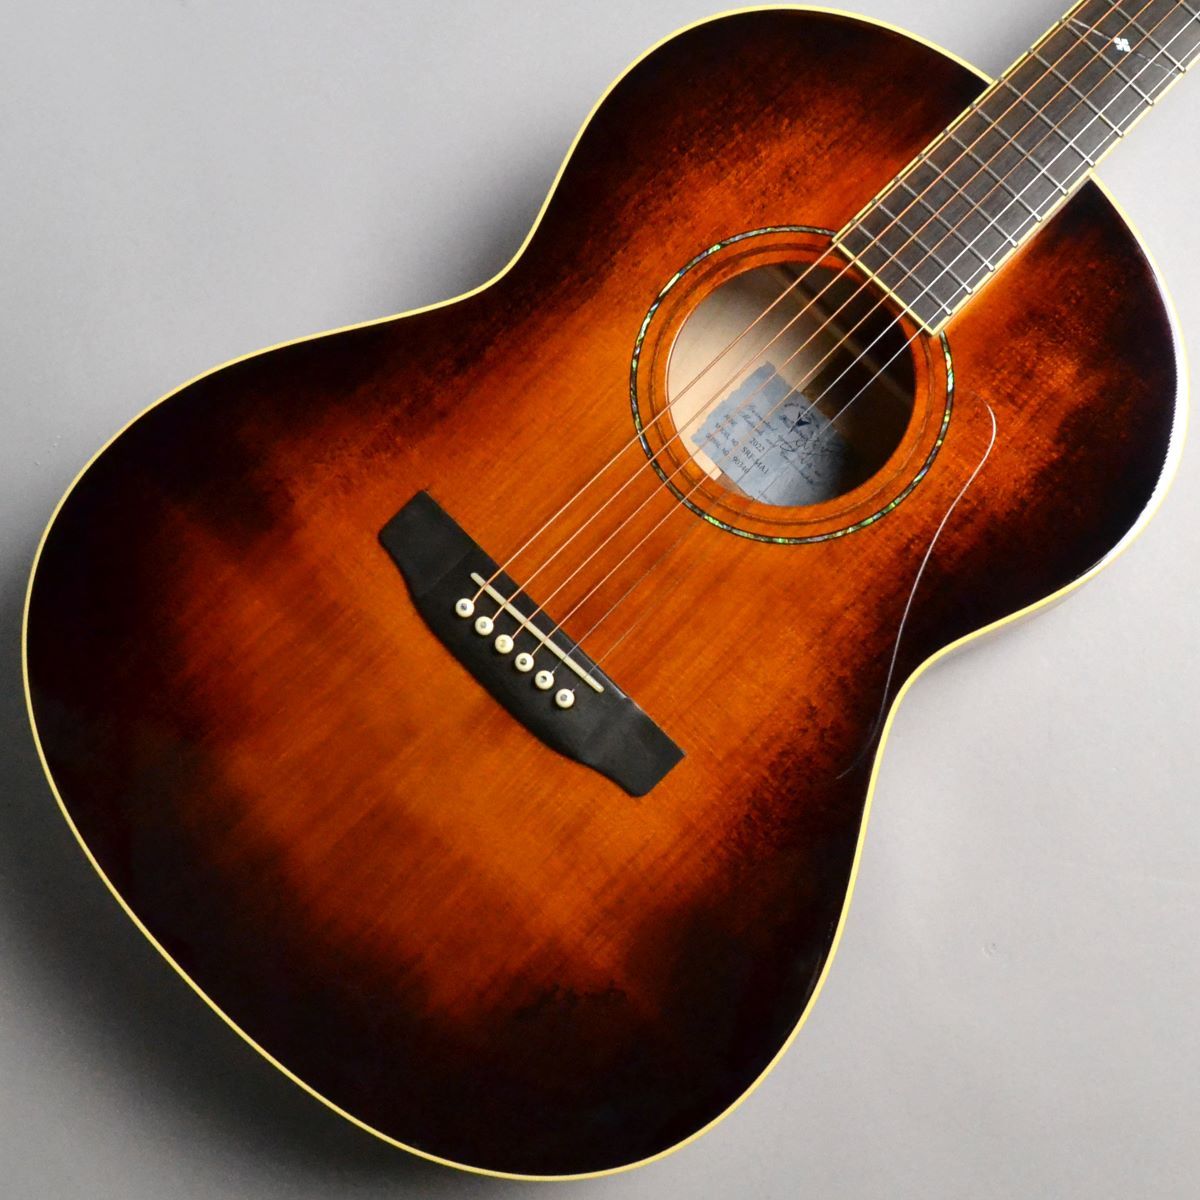 K.Yairi SRF-MA1 Vintage Sunburst アコースティックギター ハード